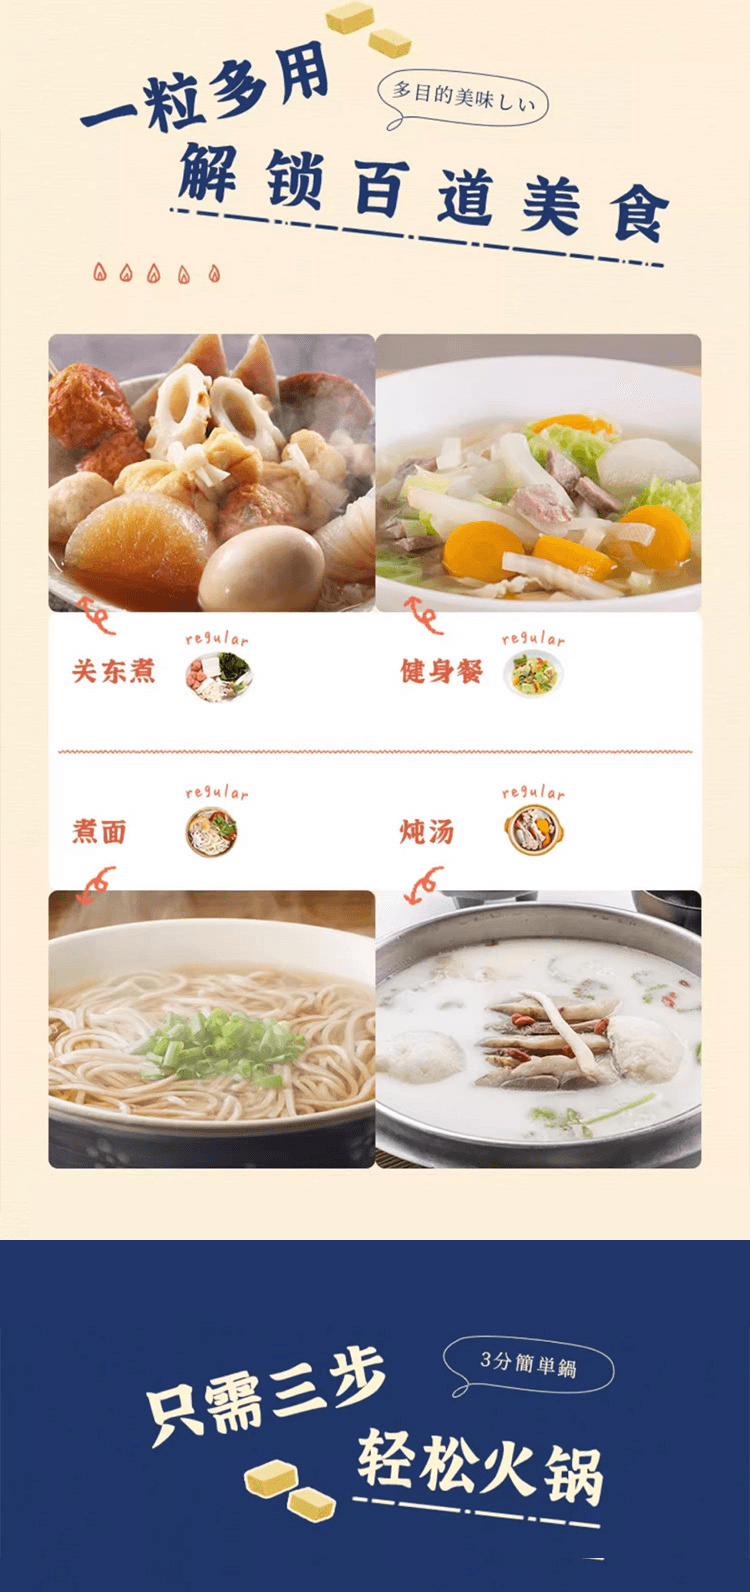 【日本直郵】AJINOMOTO味之素 小方塊火鍋湯底調味塊 濃鬱雞湯 8塊